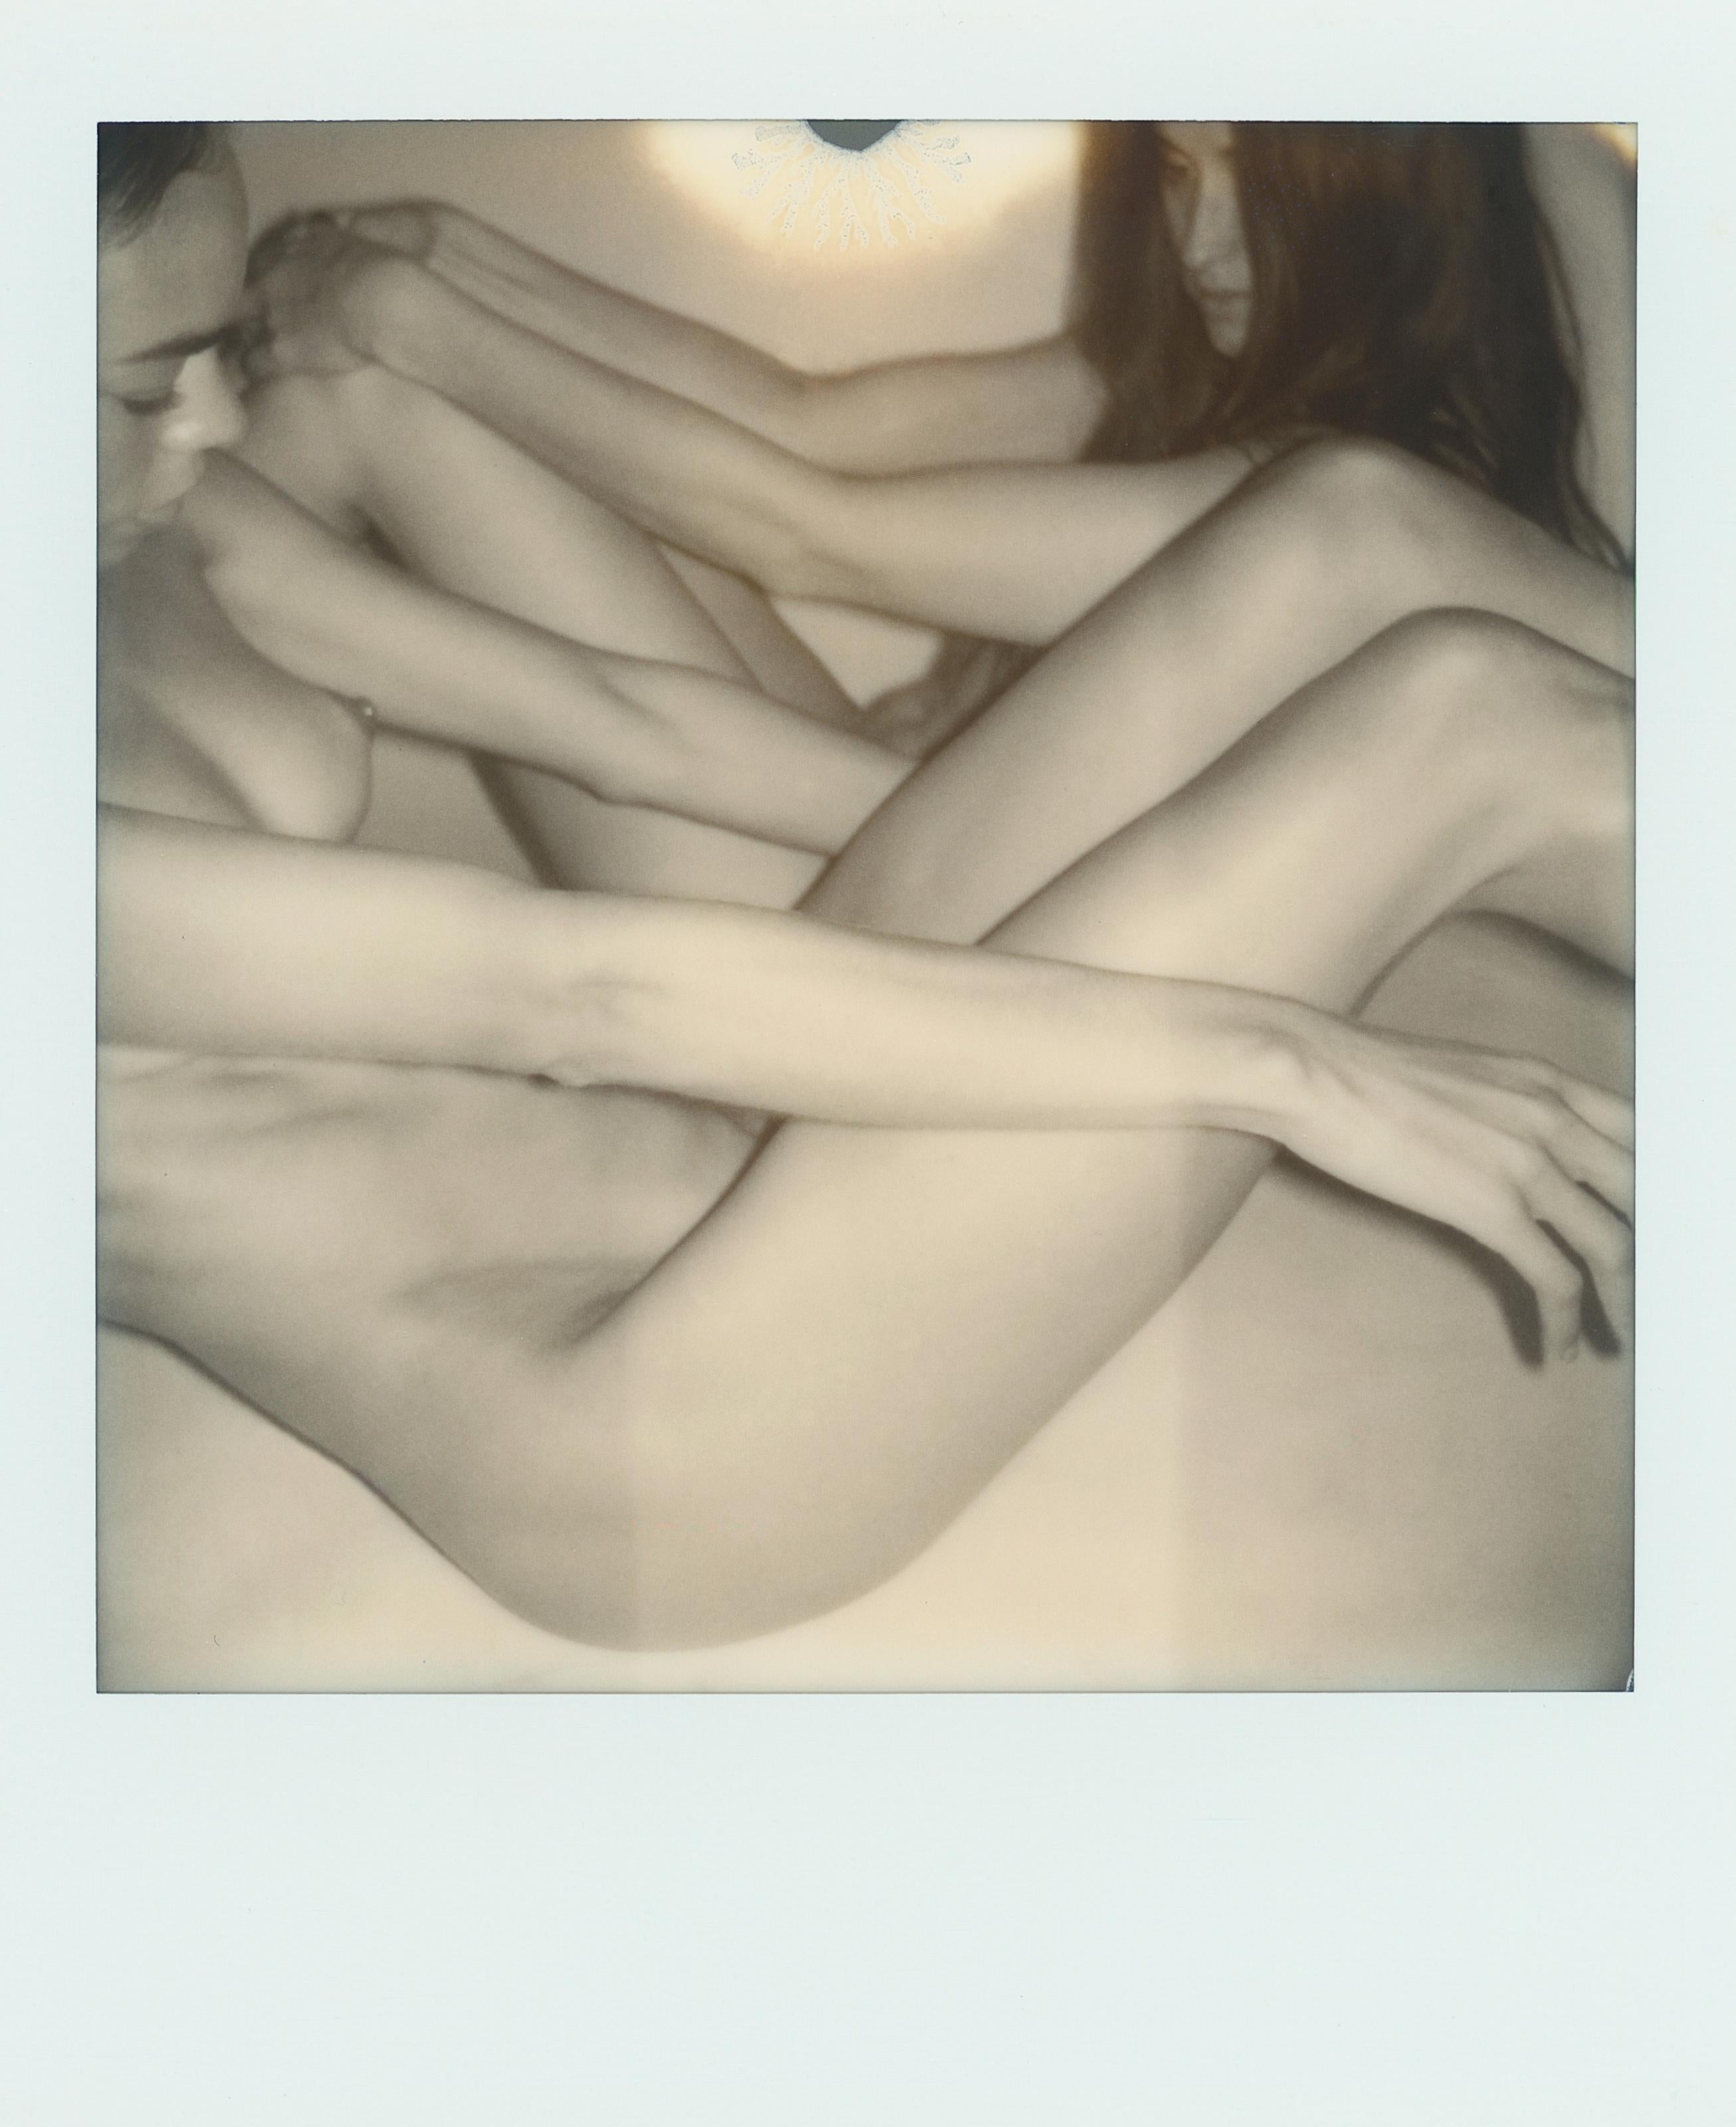 "Pola Girls 18" (FRAMED) Akt-Polaroid-Fotografie von Larsen Sotelo 

4,2" x 3,5" Zoll - einschließlich weißem Polaroidrahmen
3,1" x 3,1" Zoll - Bildfläche

Mit Kunststoffrahmen aus Acrylnitril-Butadien-Styrol (ABS)

Nummeriert und handsigniert vom